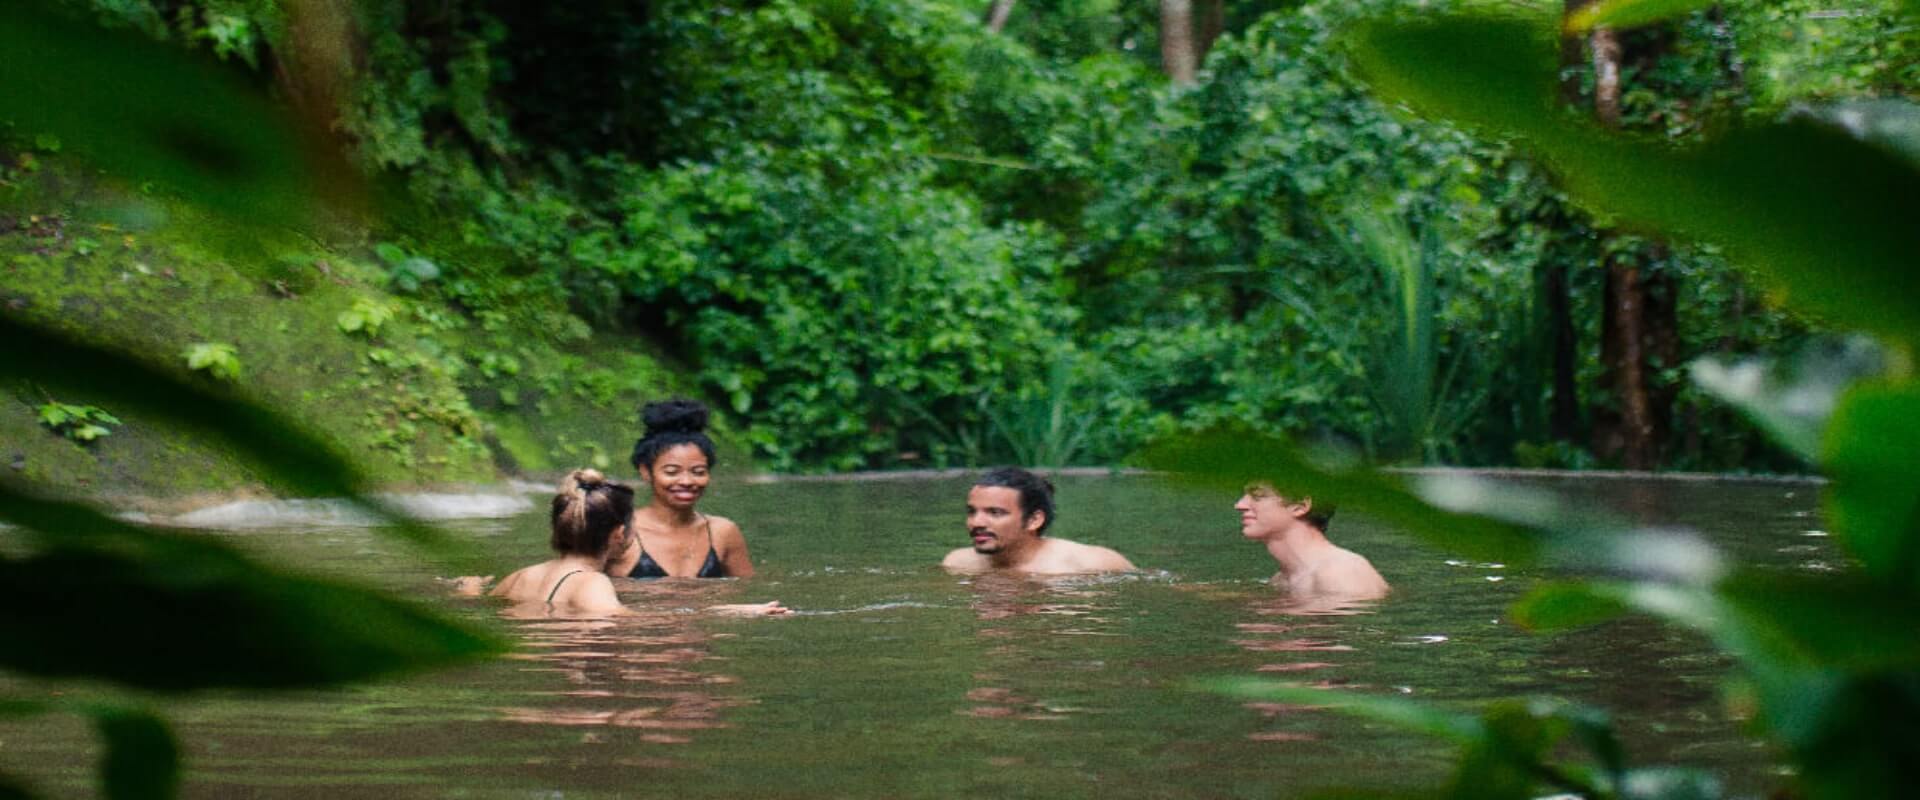 Aguas termales Vandara y tour de aventura  | Costa Rica Jade Tours